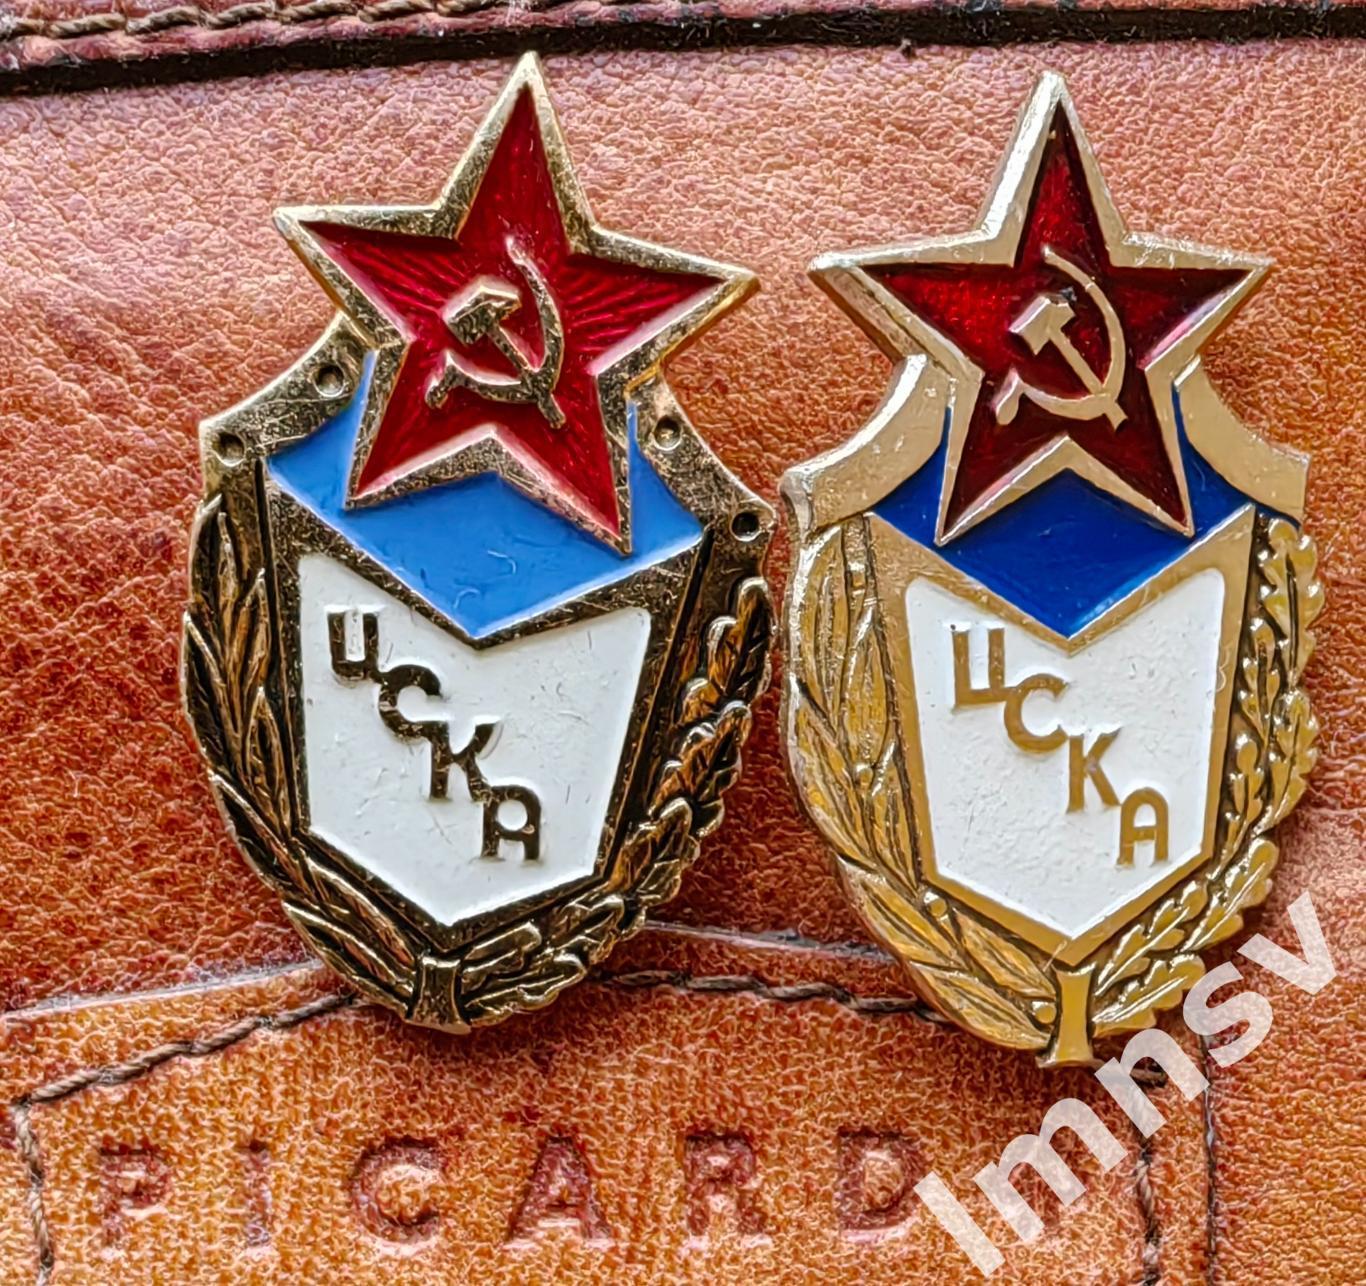 ЦСКА официальная эмблема 70-80-е годы. Два знака